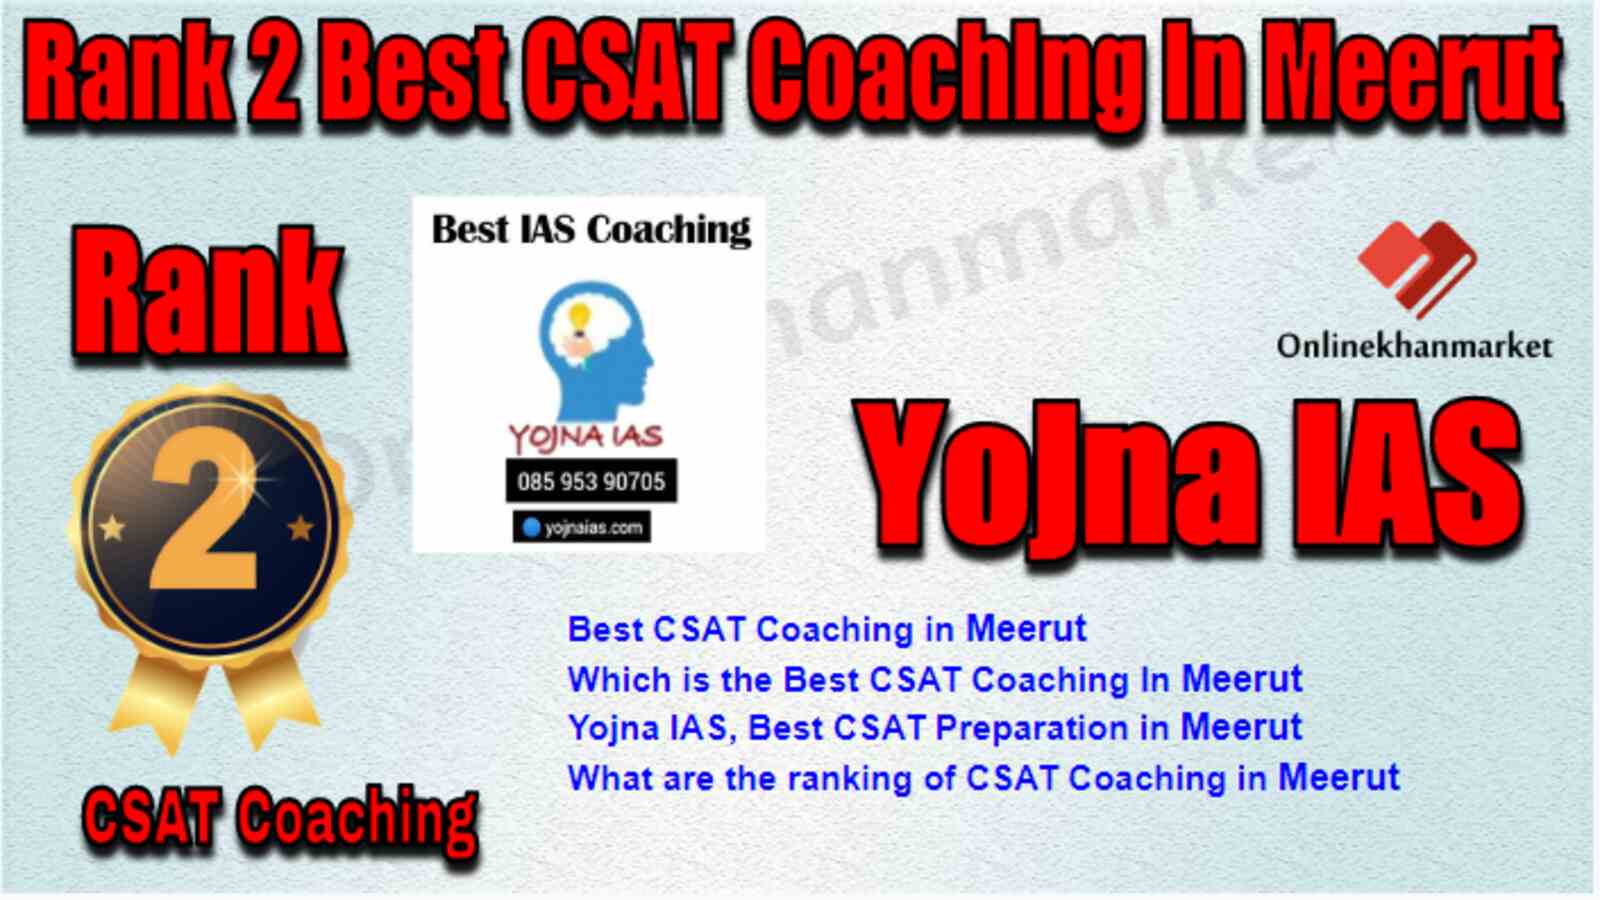 Rank 2 Best CSAT Coaching in Meerut